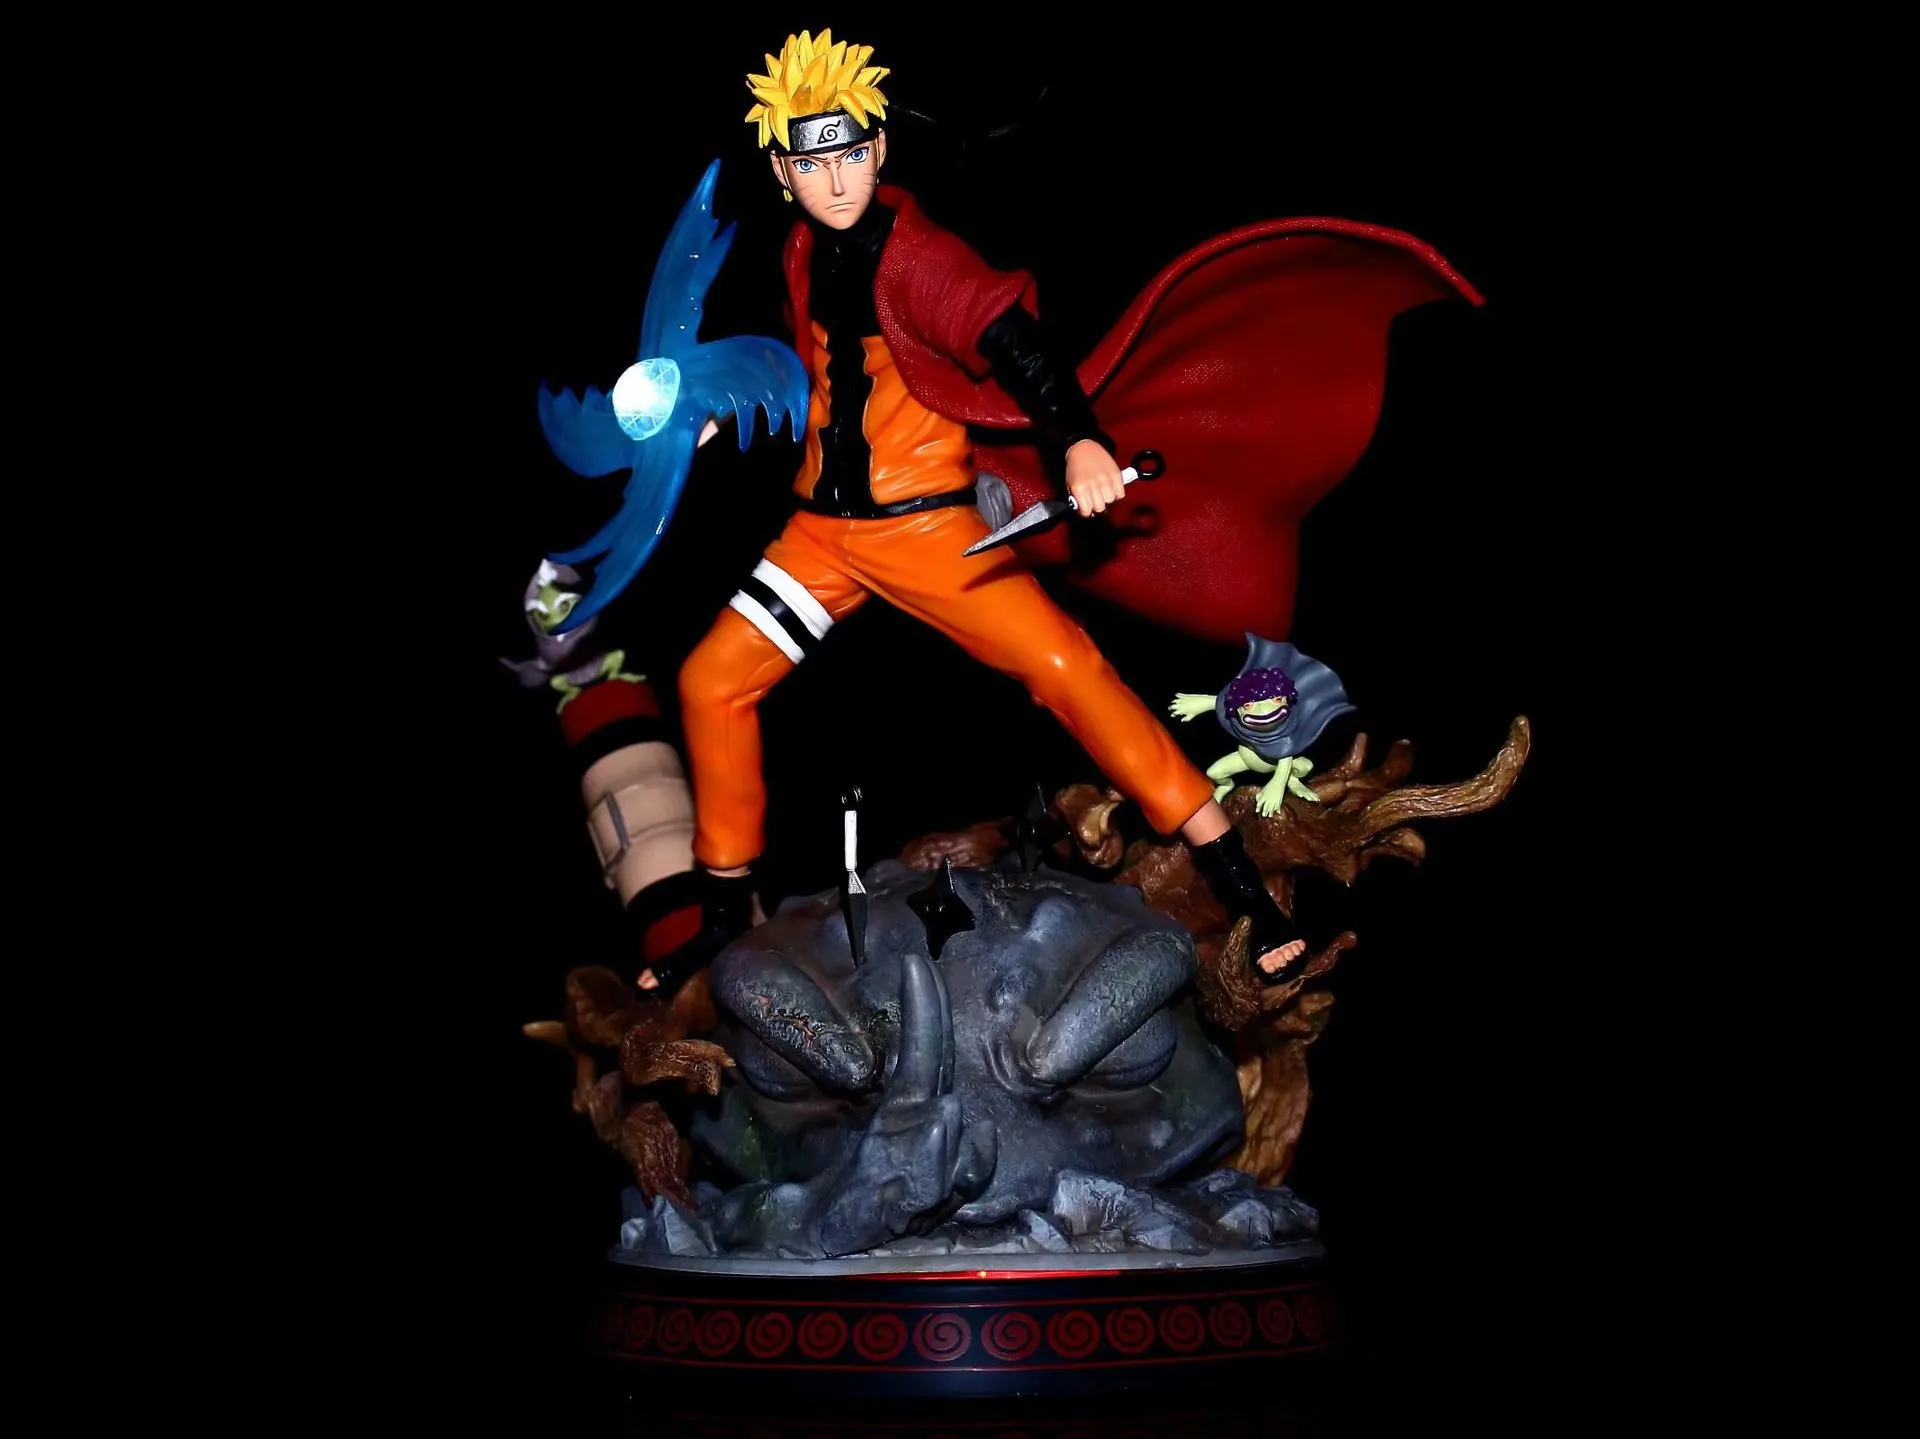 Naruto GK Burning Wind sapo Fairy Naruto Sasuke Vortex Modelo de píldora espiral Estatua Decoración Hand Office9488822222